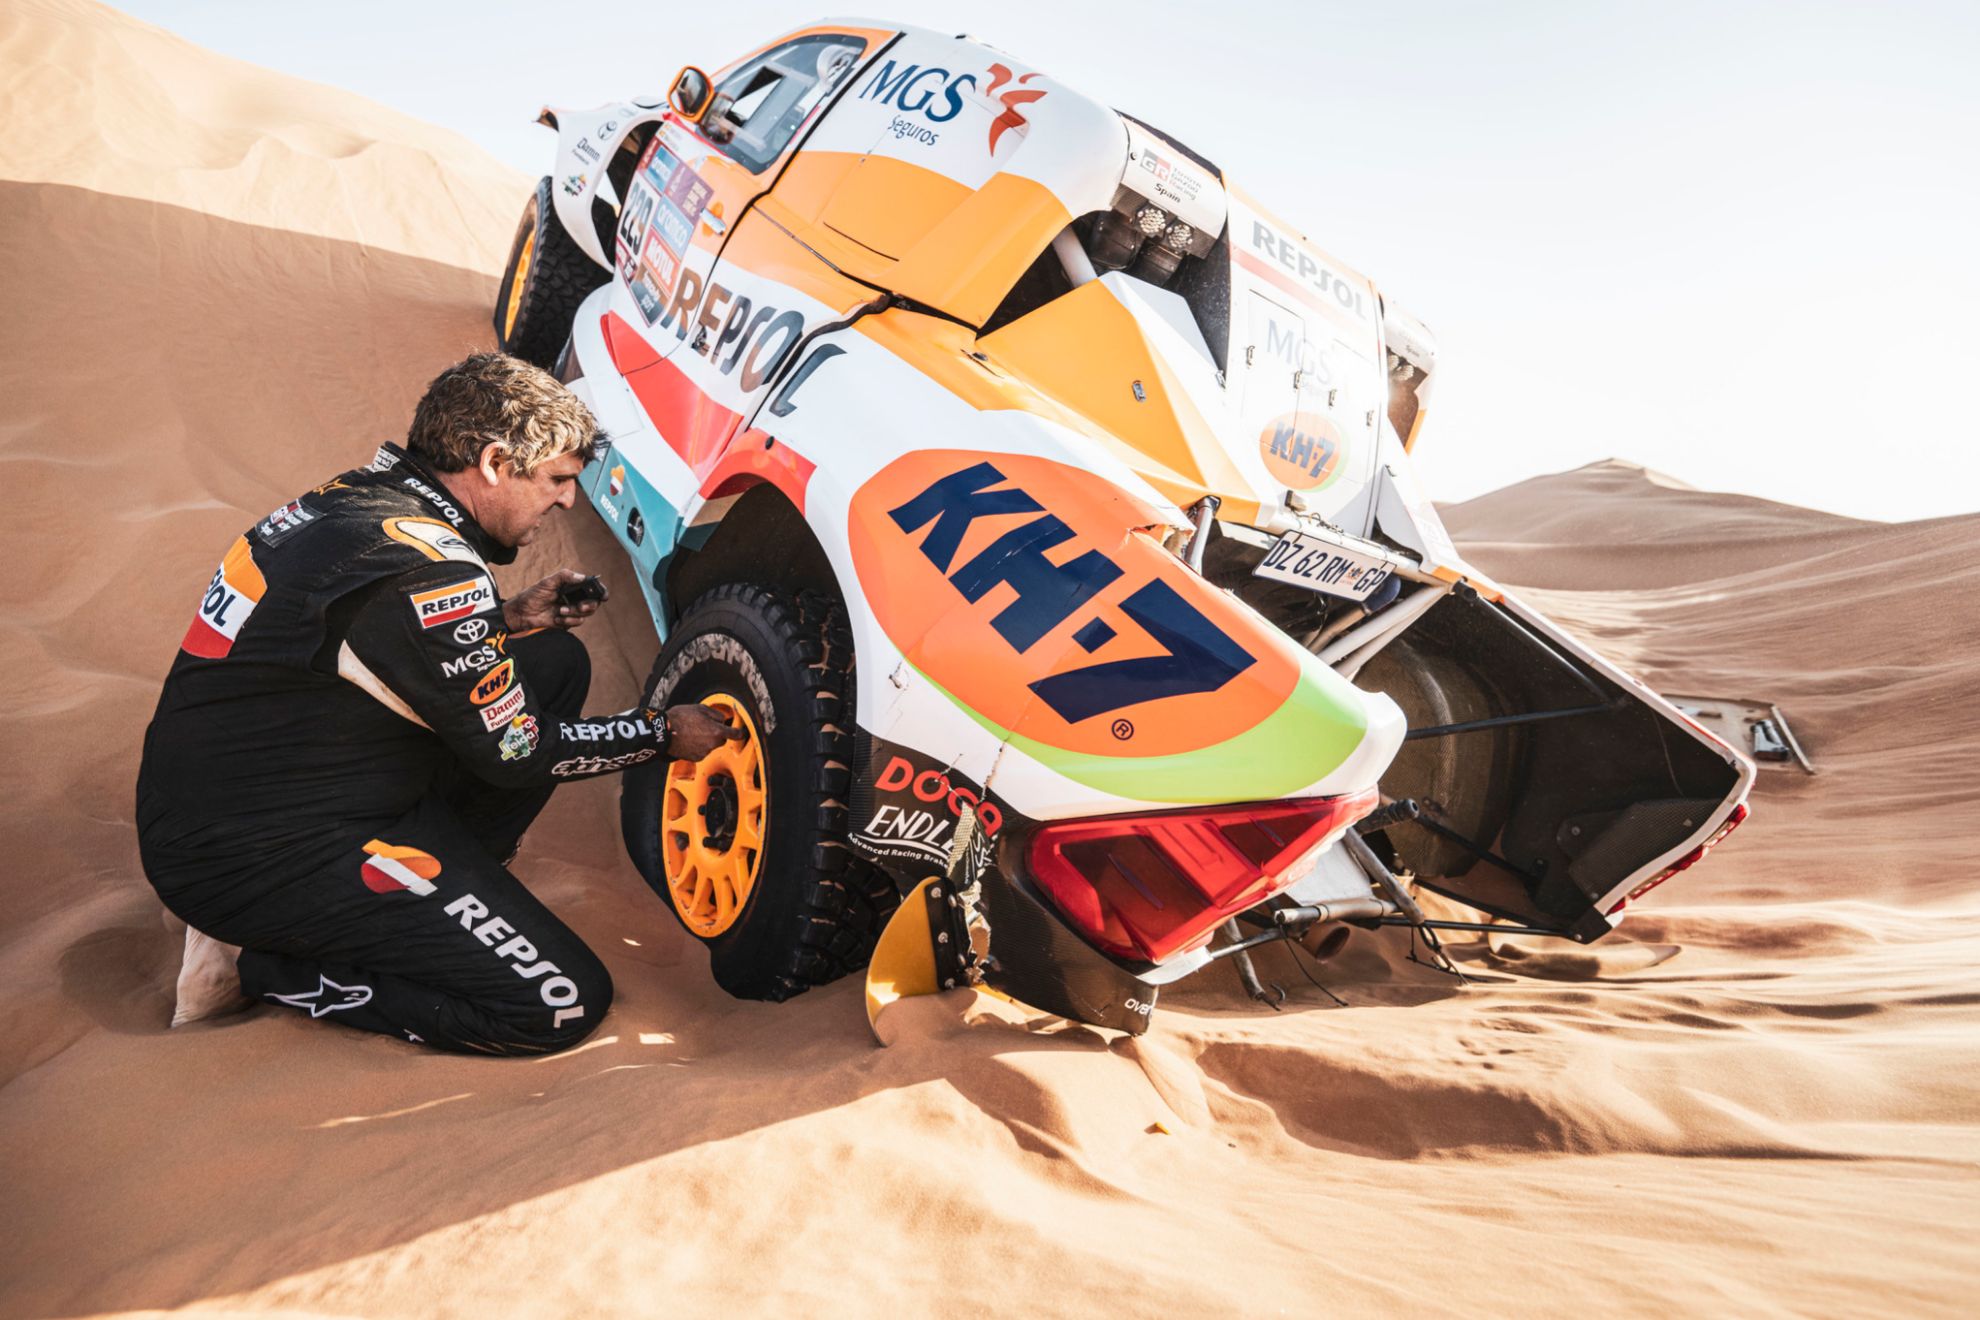 Isidre Esteve compite en igualdad de condiciones con el resto en el Dakar, pese a su discapacidad.